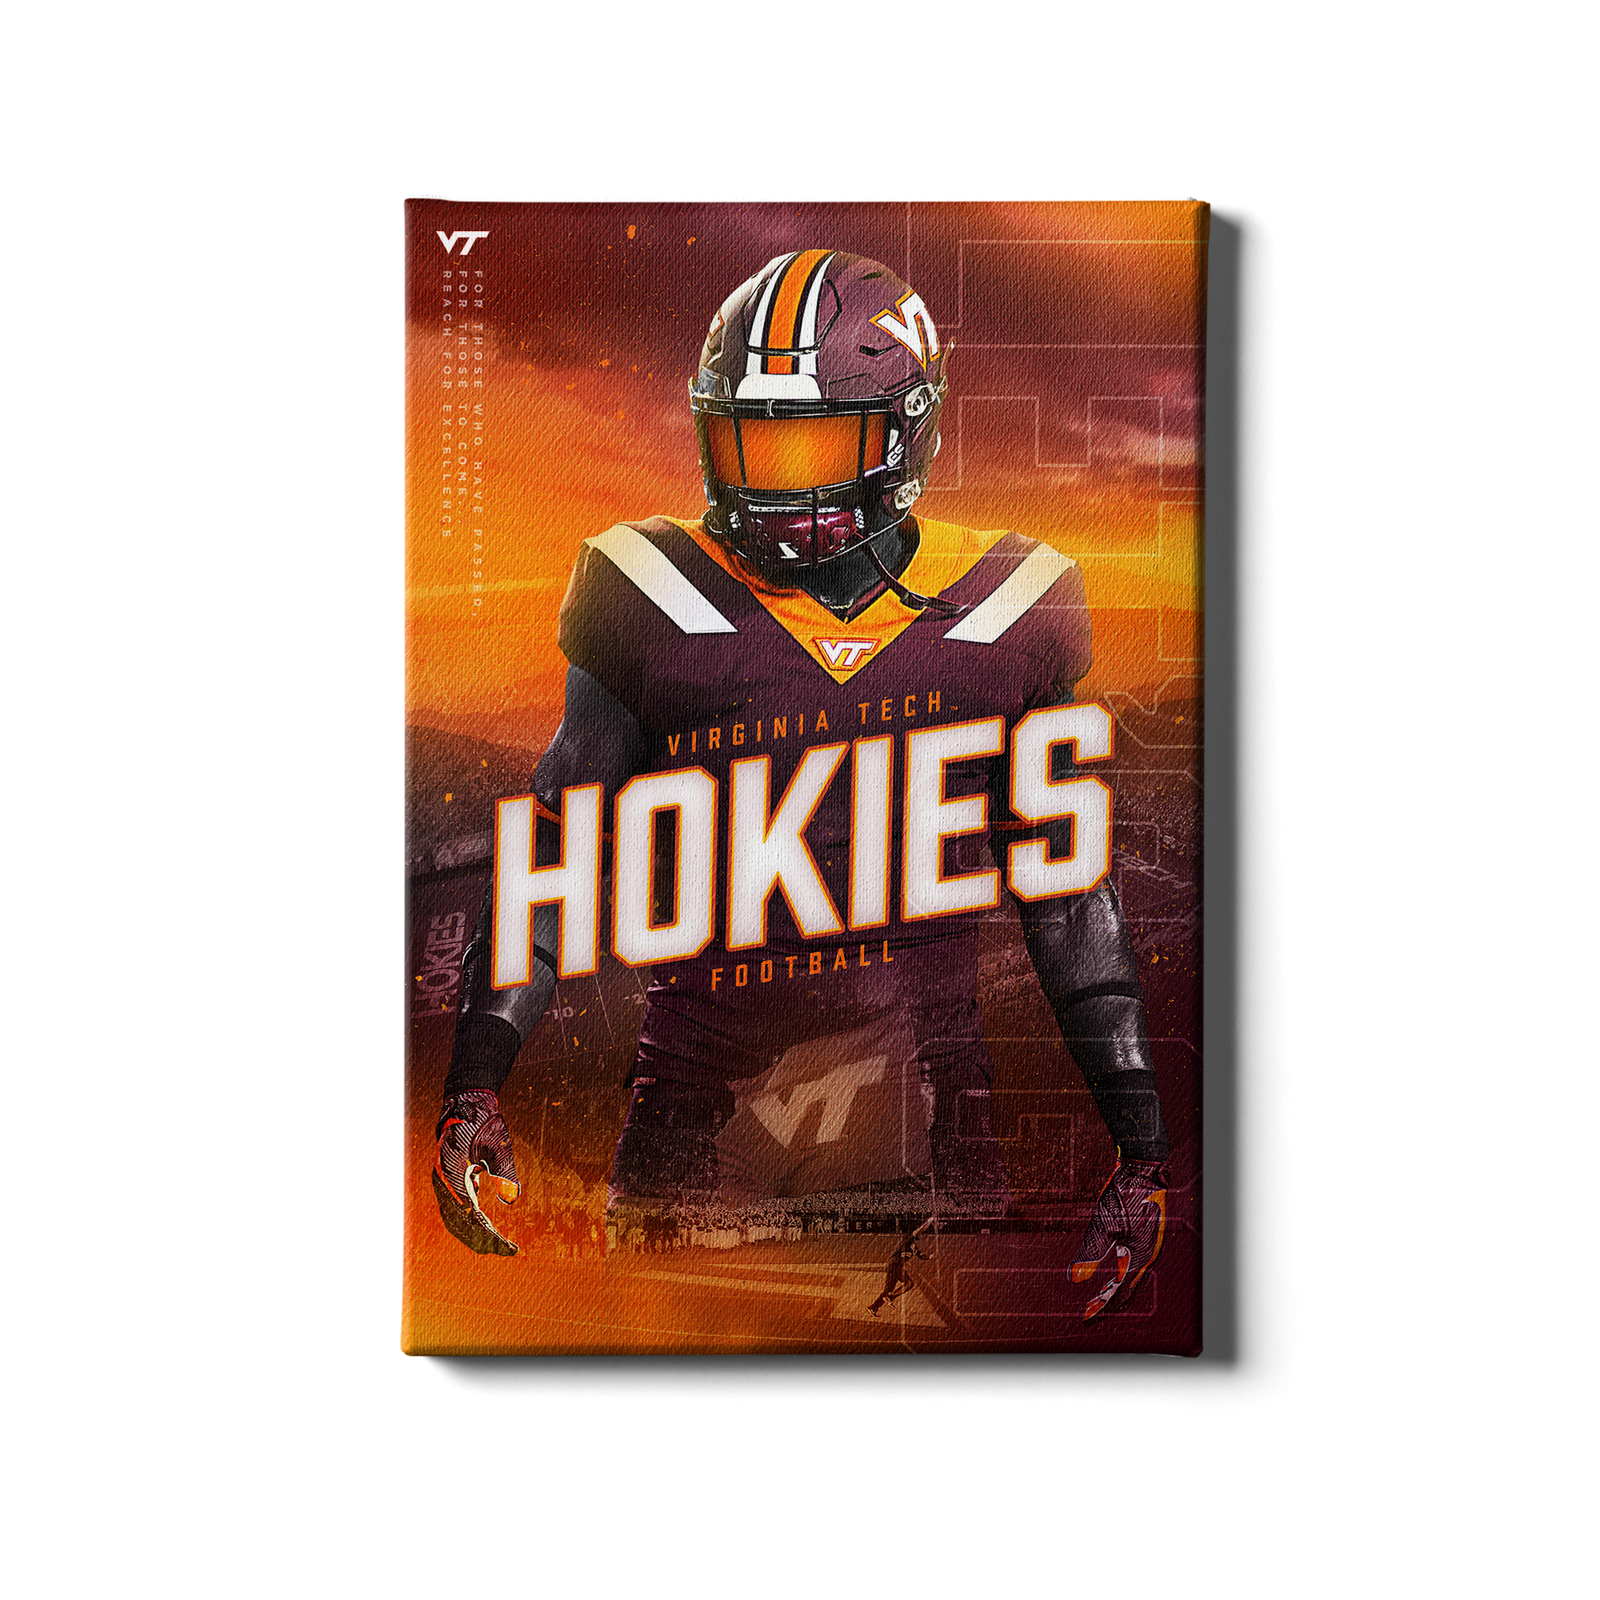 Virginia Tech Hokies Football Panoramic Poster - Lane Stadium Picture  Decade Awards VAT6